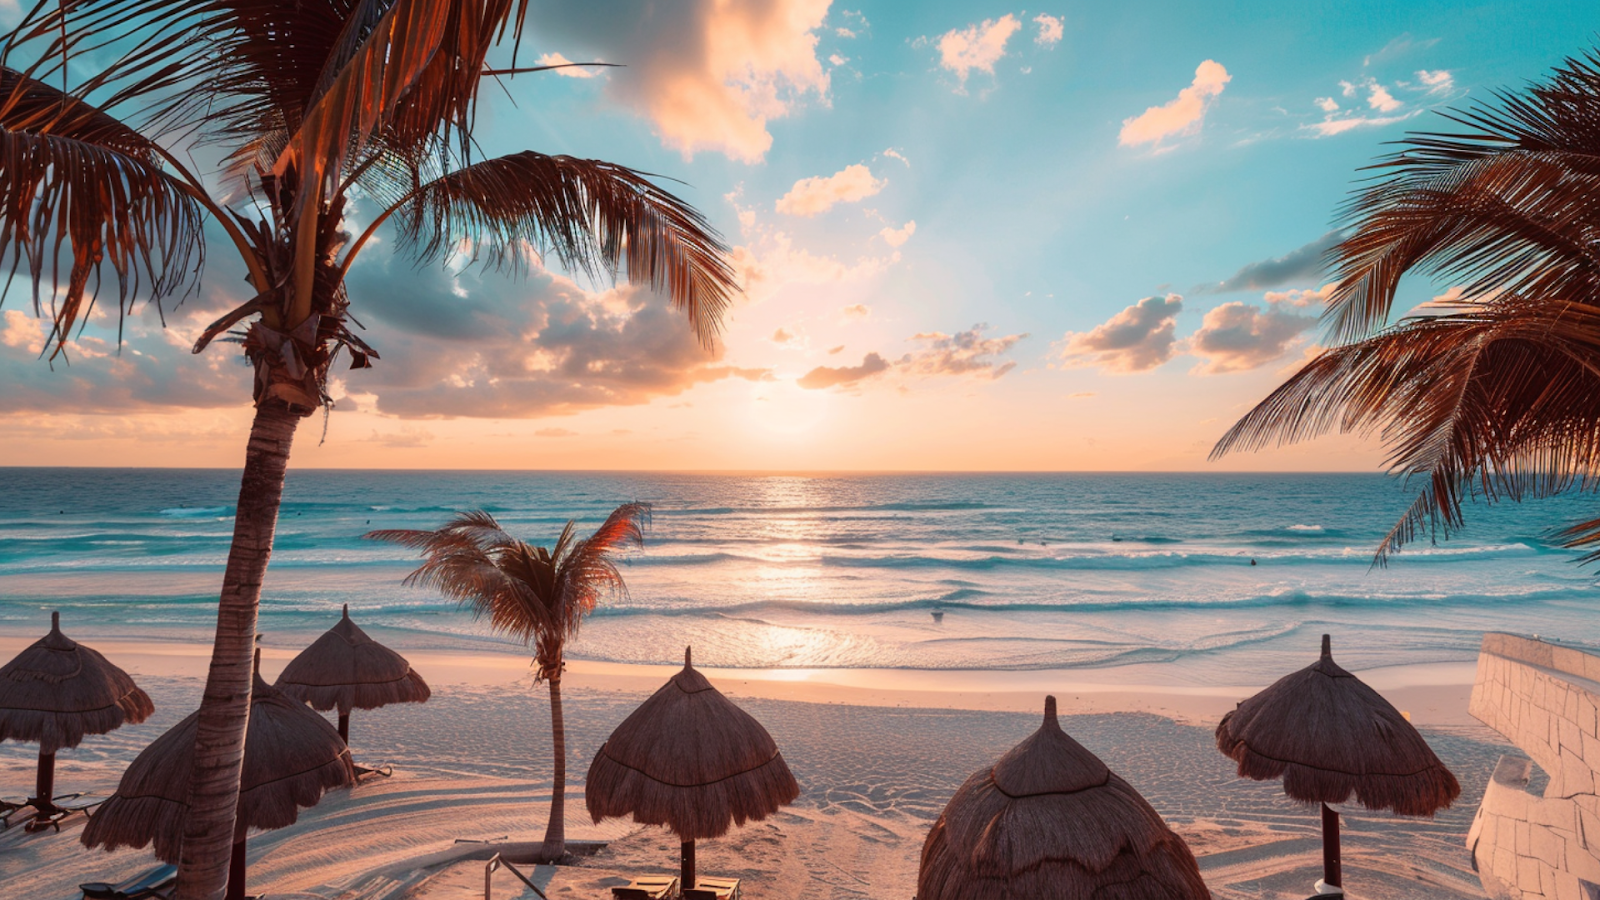 A peaceful sunrise scene by the beach in Cancun.